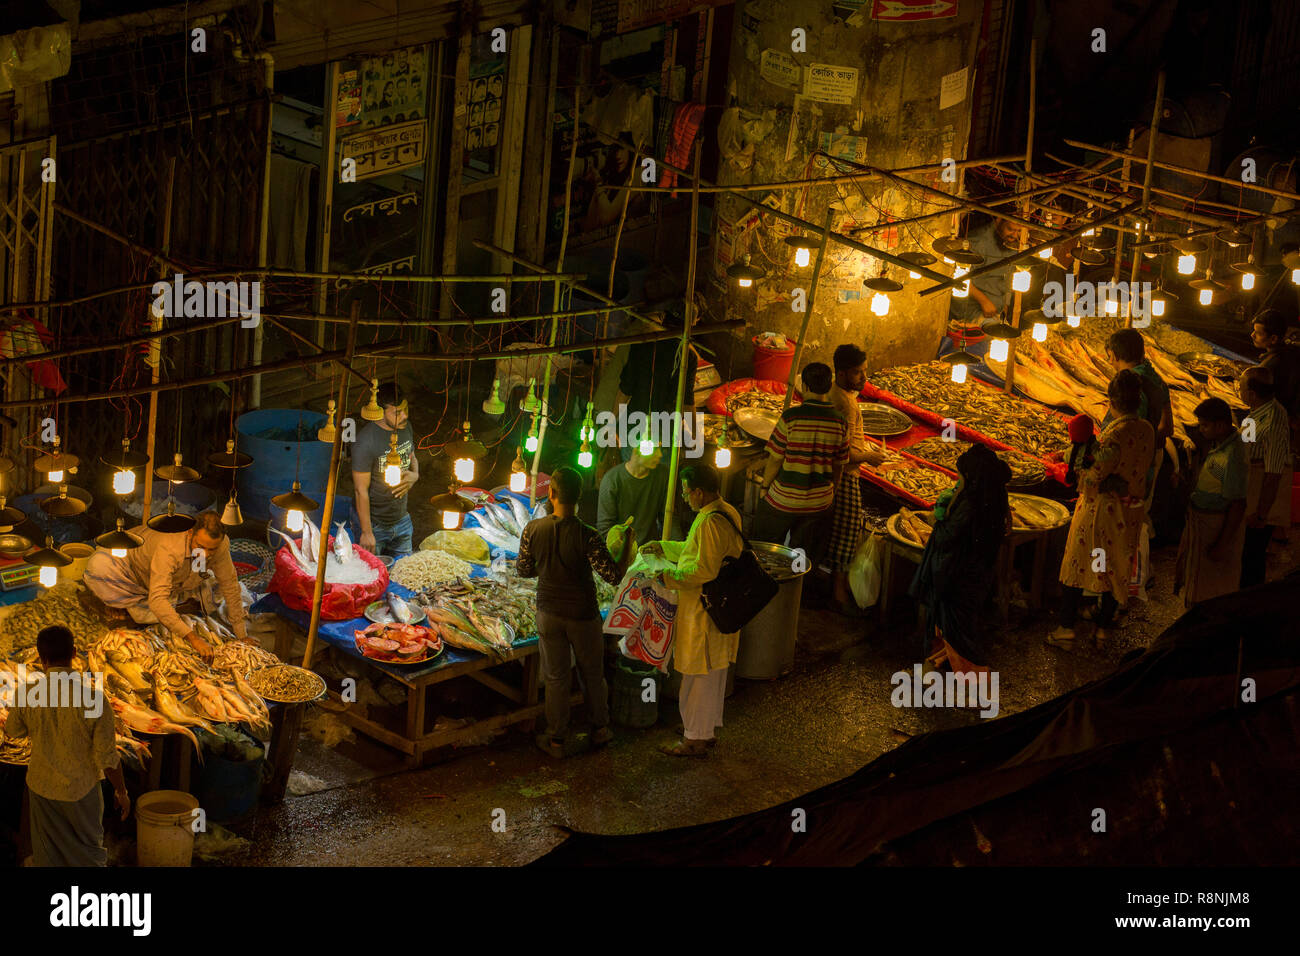 DHAKA, BANGLADESH - DECEMBER 15 : Bangladeshi people browsw fish  in a fish market at night in Dhaka, Bangladesh on December 15, 2018. Stock Photo